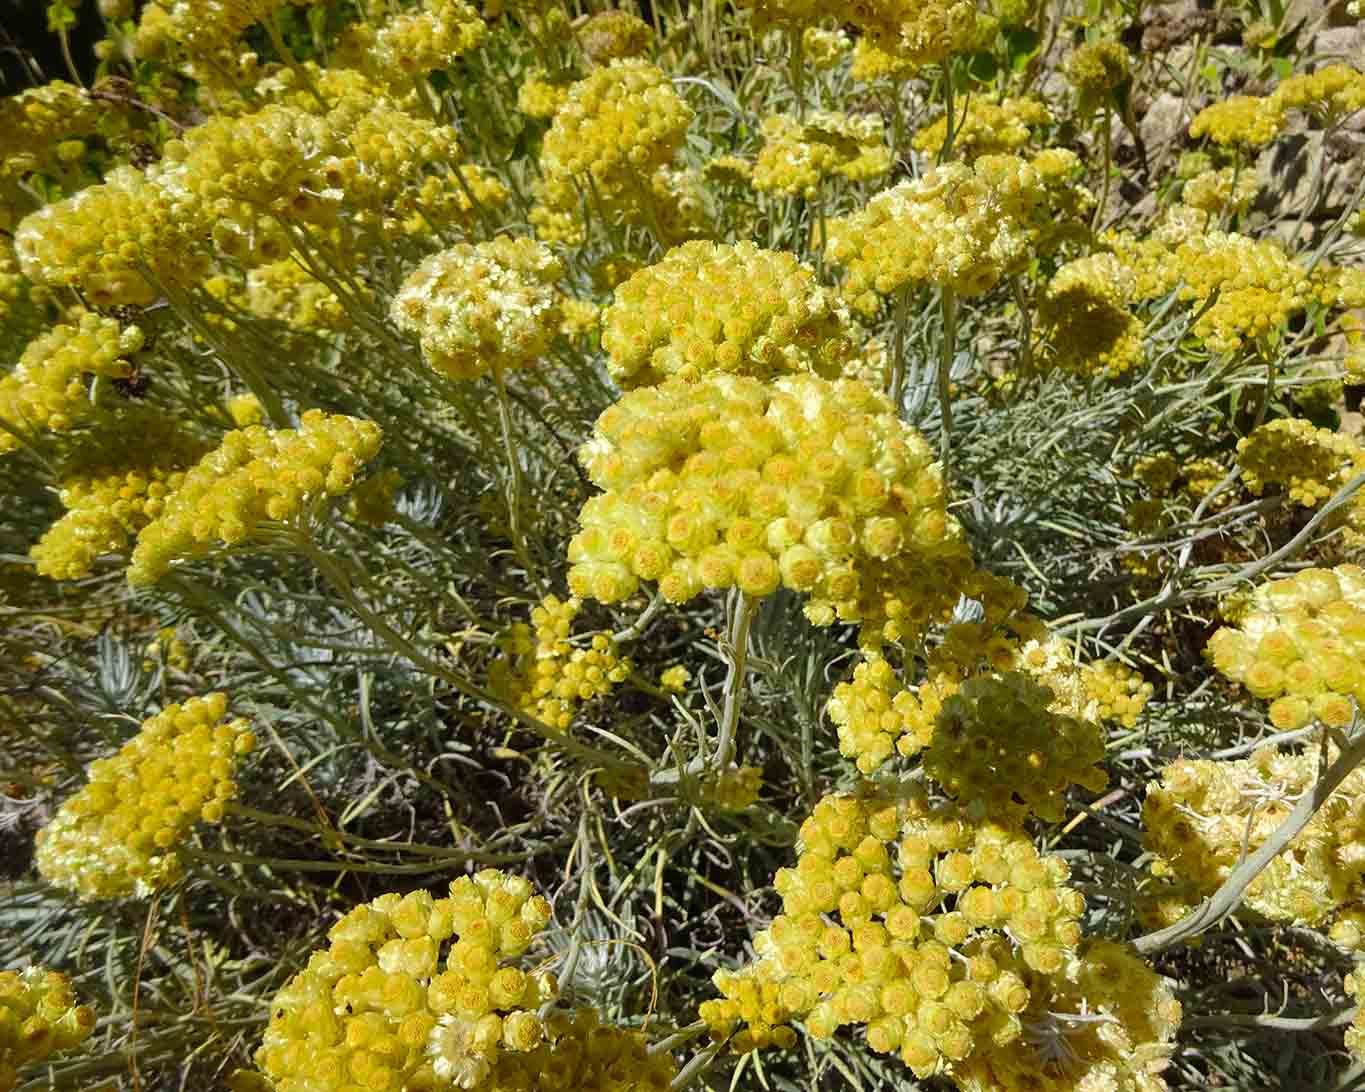 Mittelmeer-Strohblumen sind beliebt wegen ihres aromatischen Geruches.